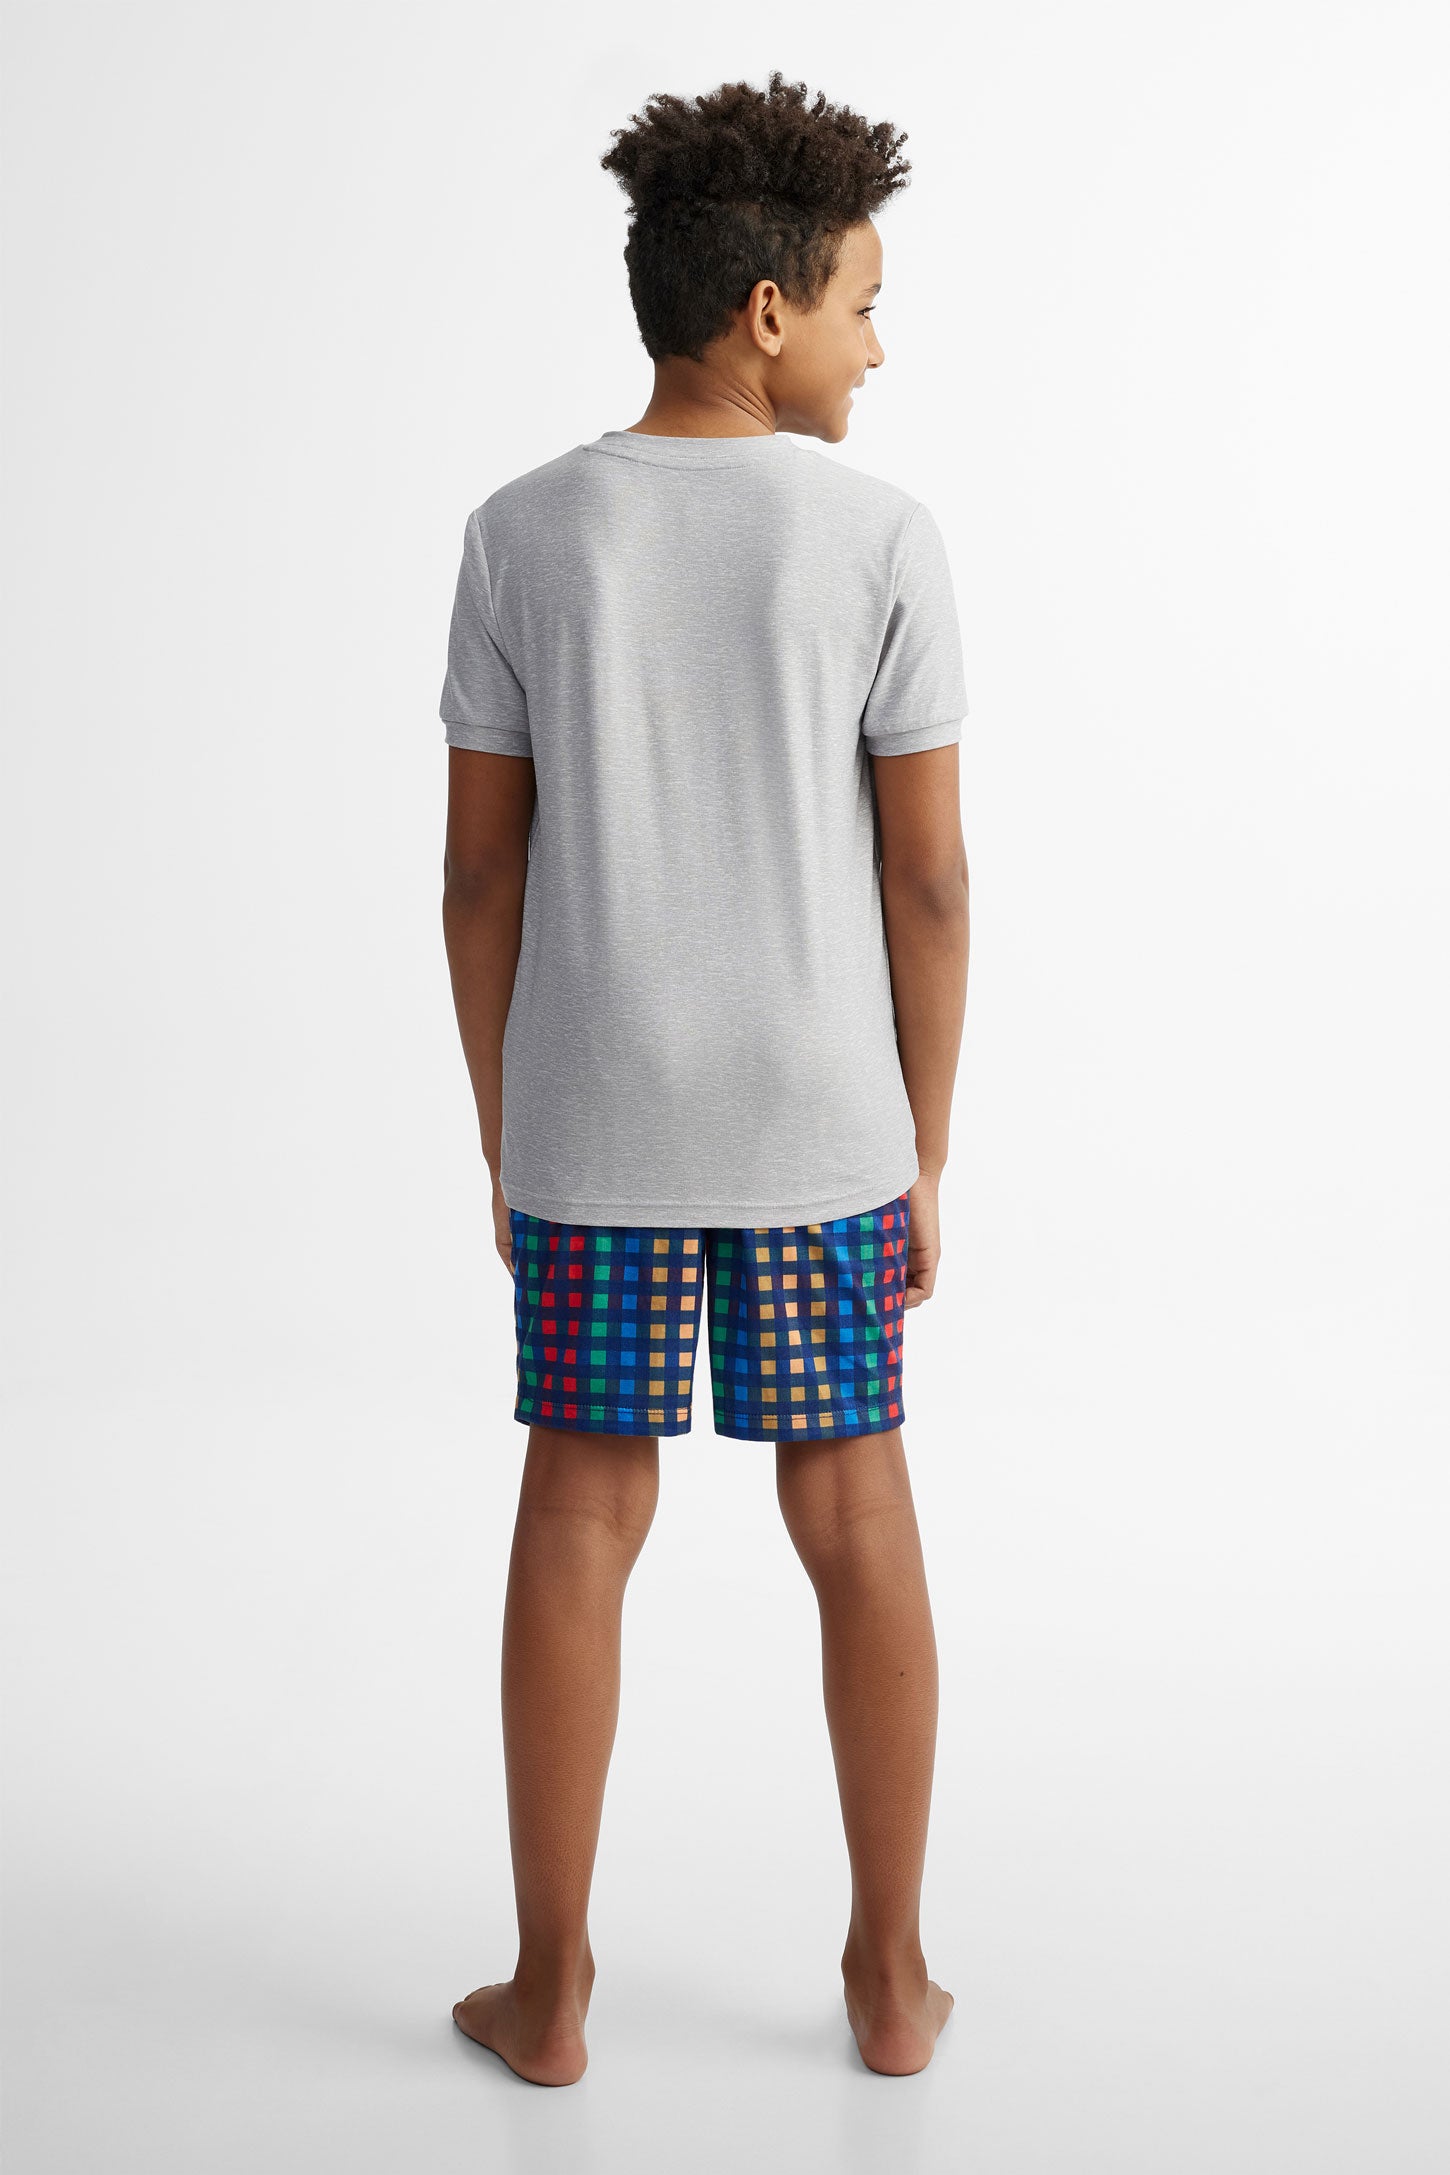 Pyjama 2-pièces t-shirt et short, 2/40$ - Ado garçon && GRIS MIXTE